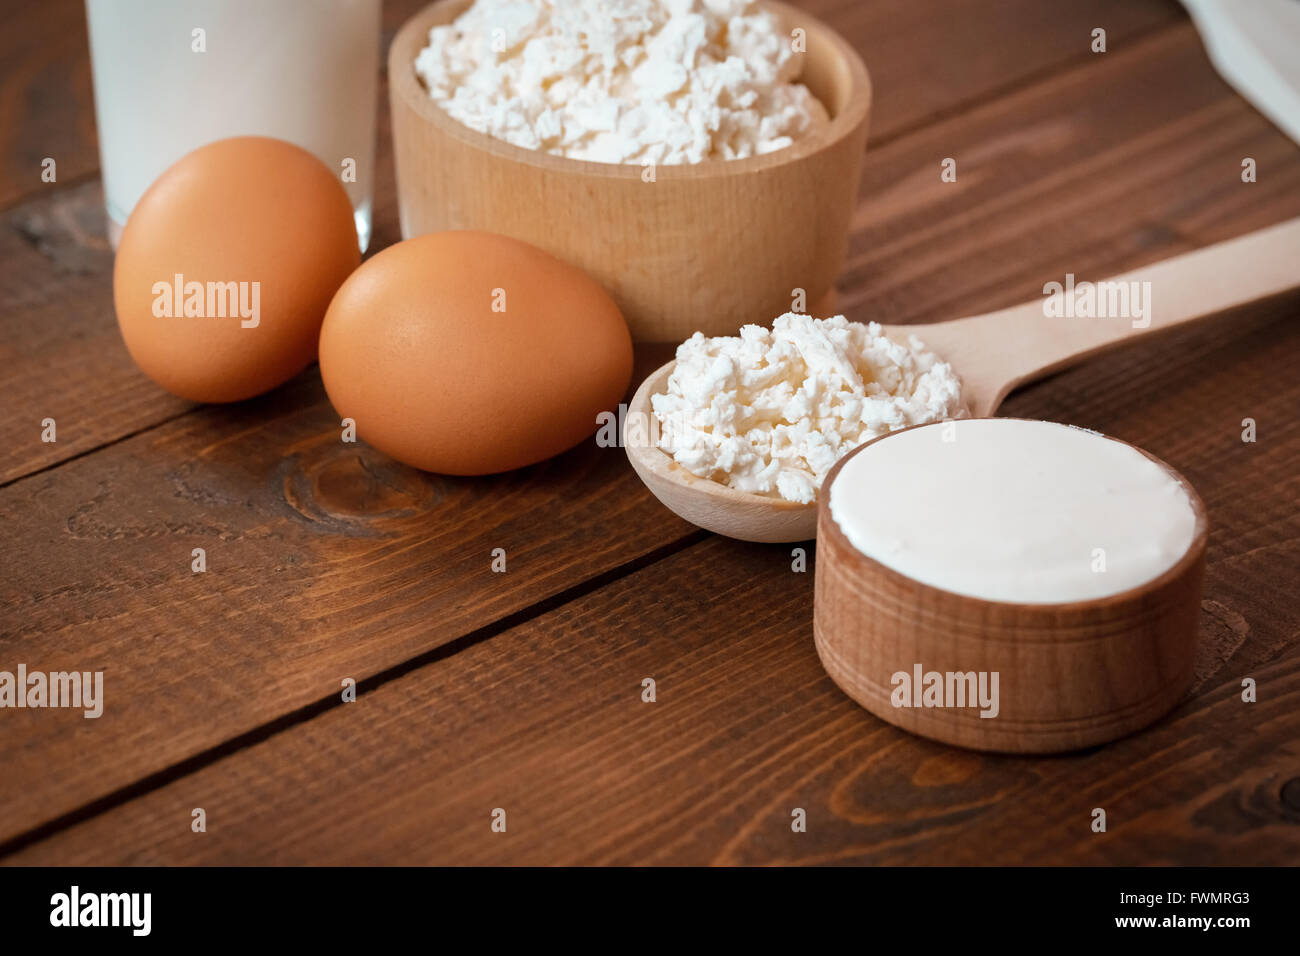 Naturale prodotti fatti in casa: latte, formaggio, panna acida e uova sul vecchio sfondo di legno con spazio libero per il testo Foto Stock